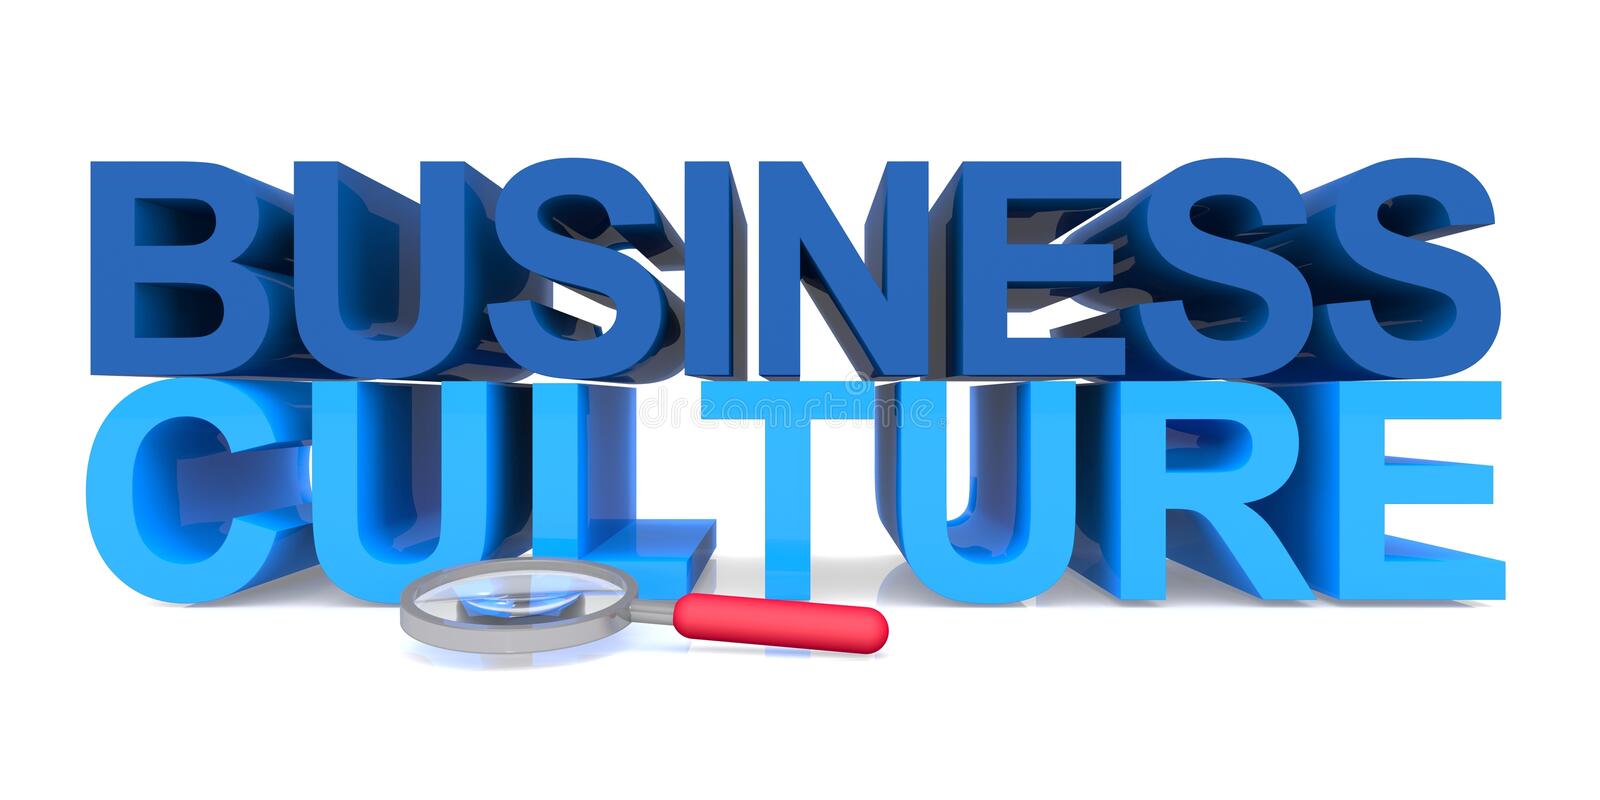 BL-EM1180-130706 - Văn hóa kinh doanh và tinh thần khởi nghiệp